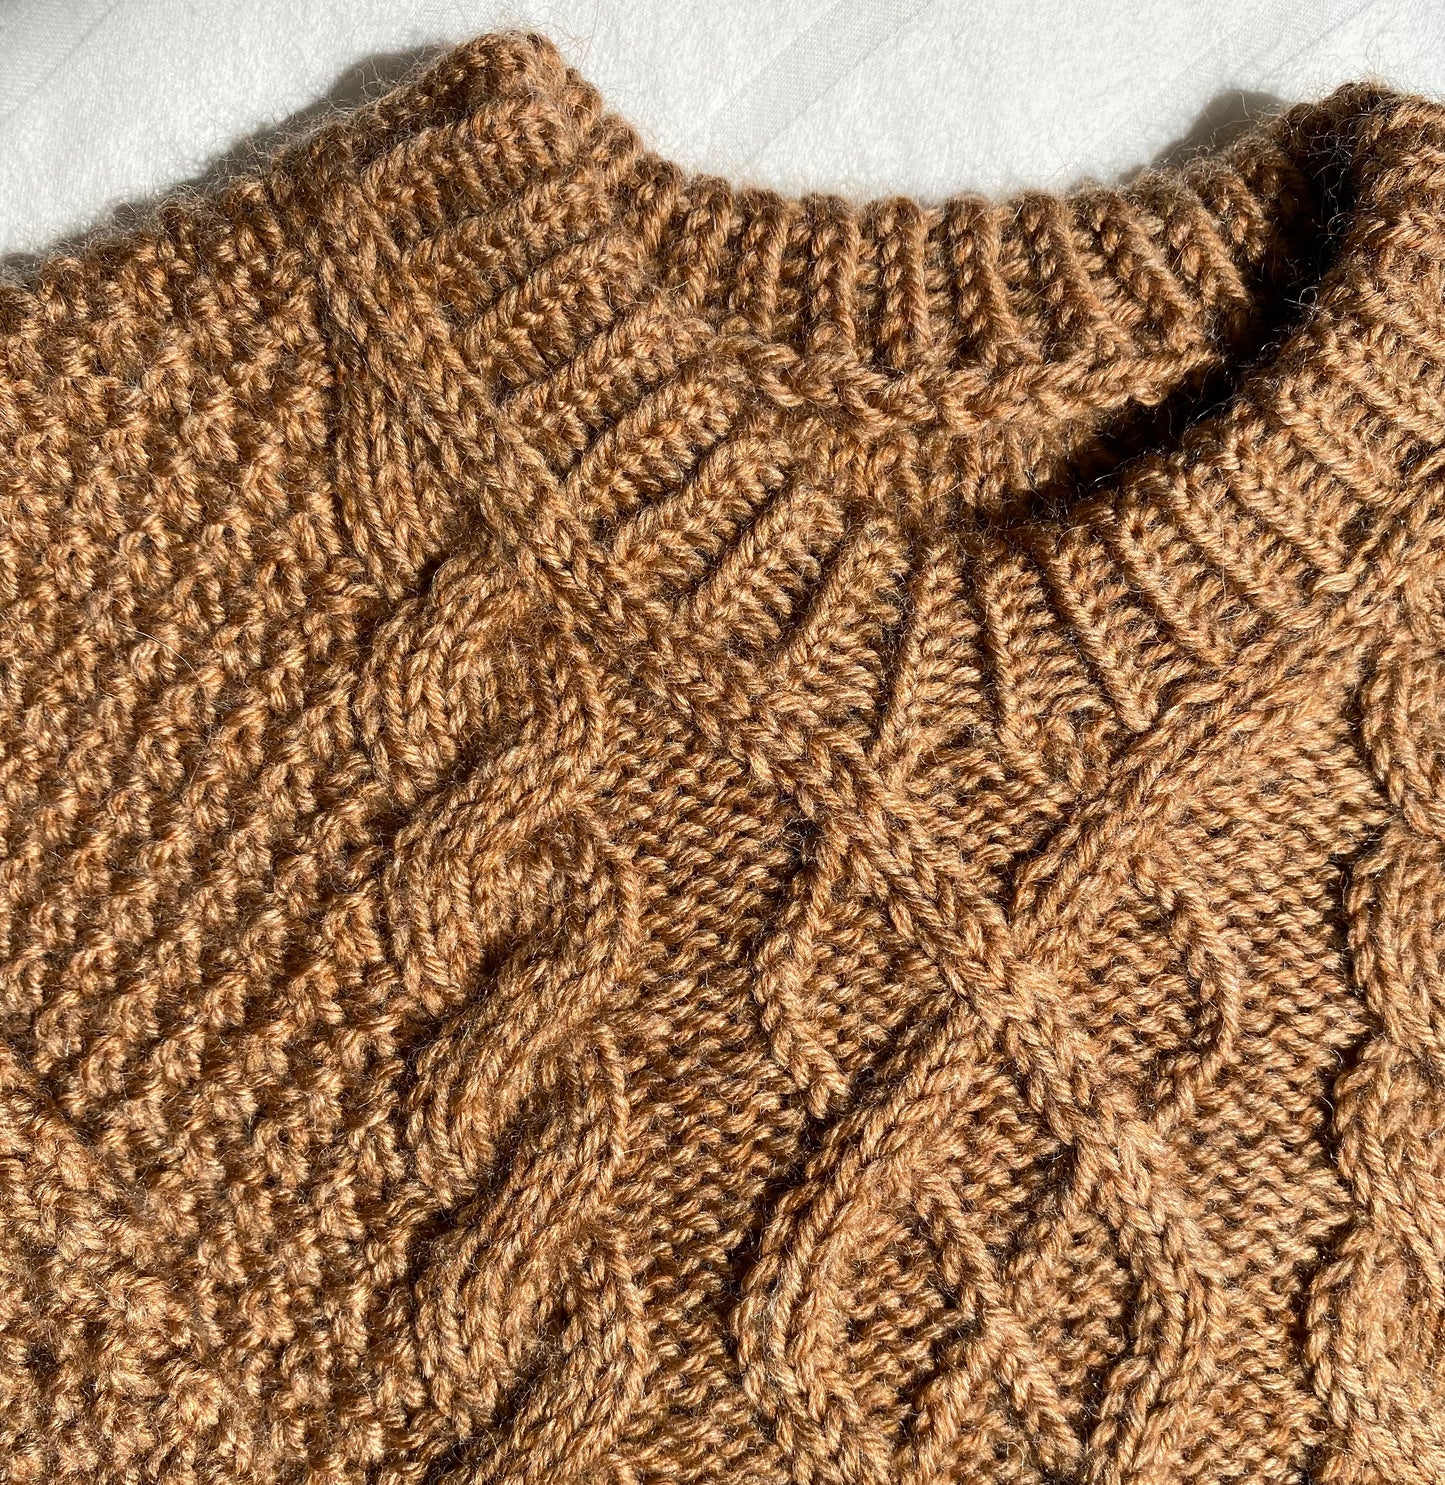 Swirl Sweater Baby - English